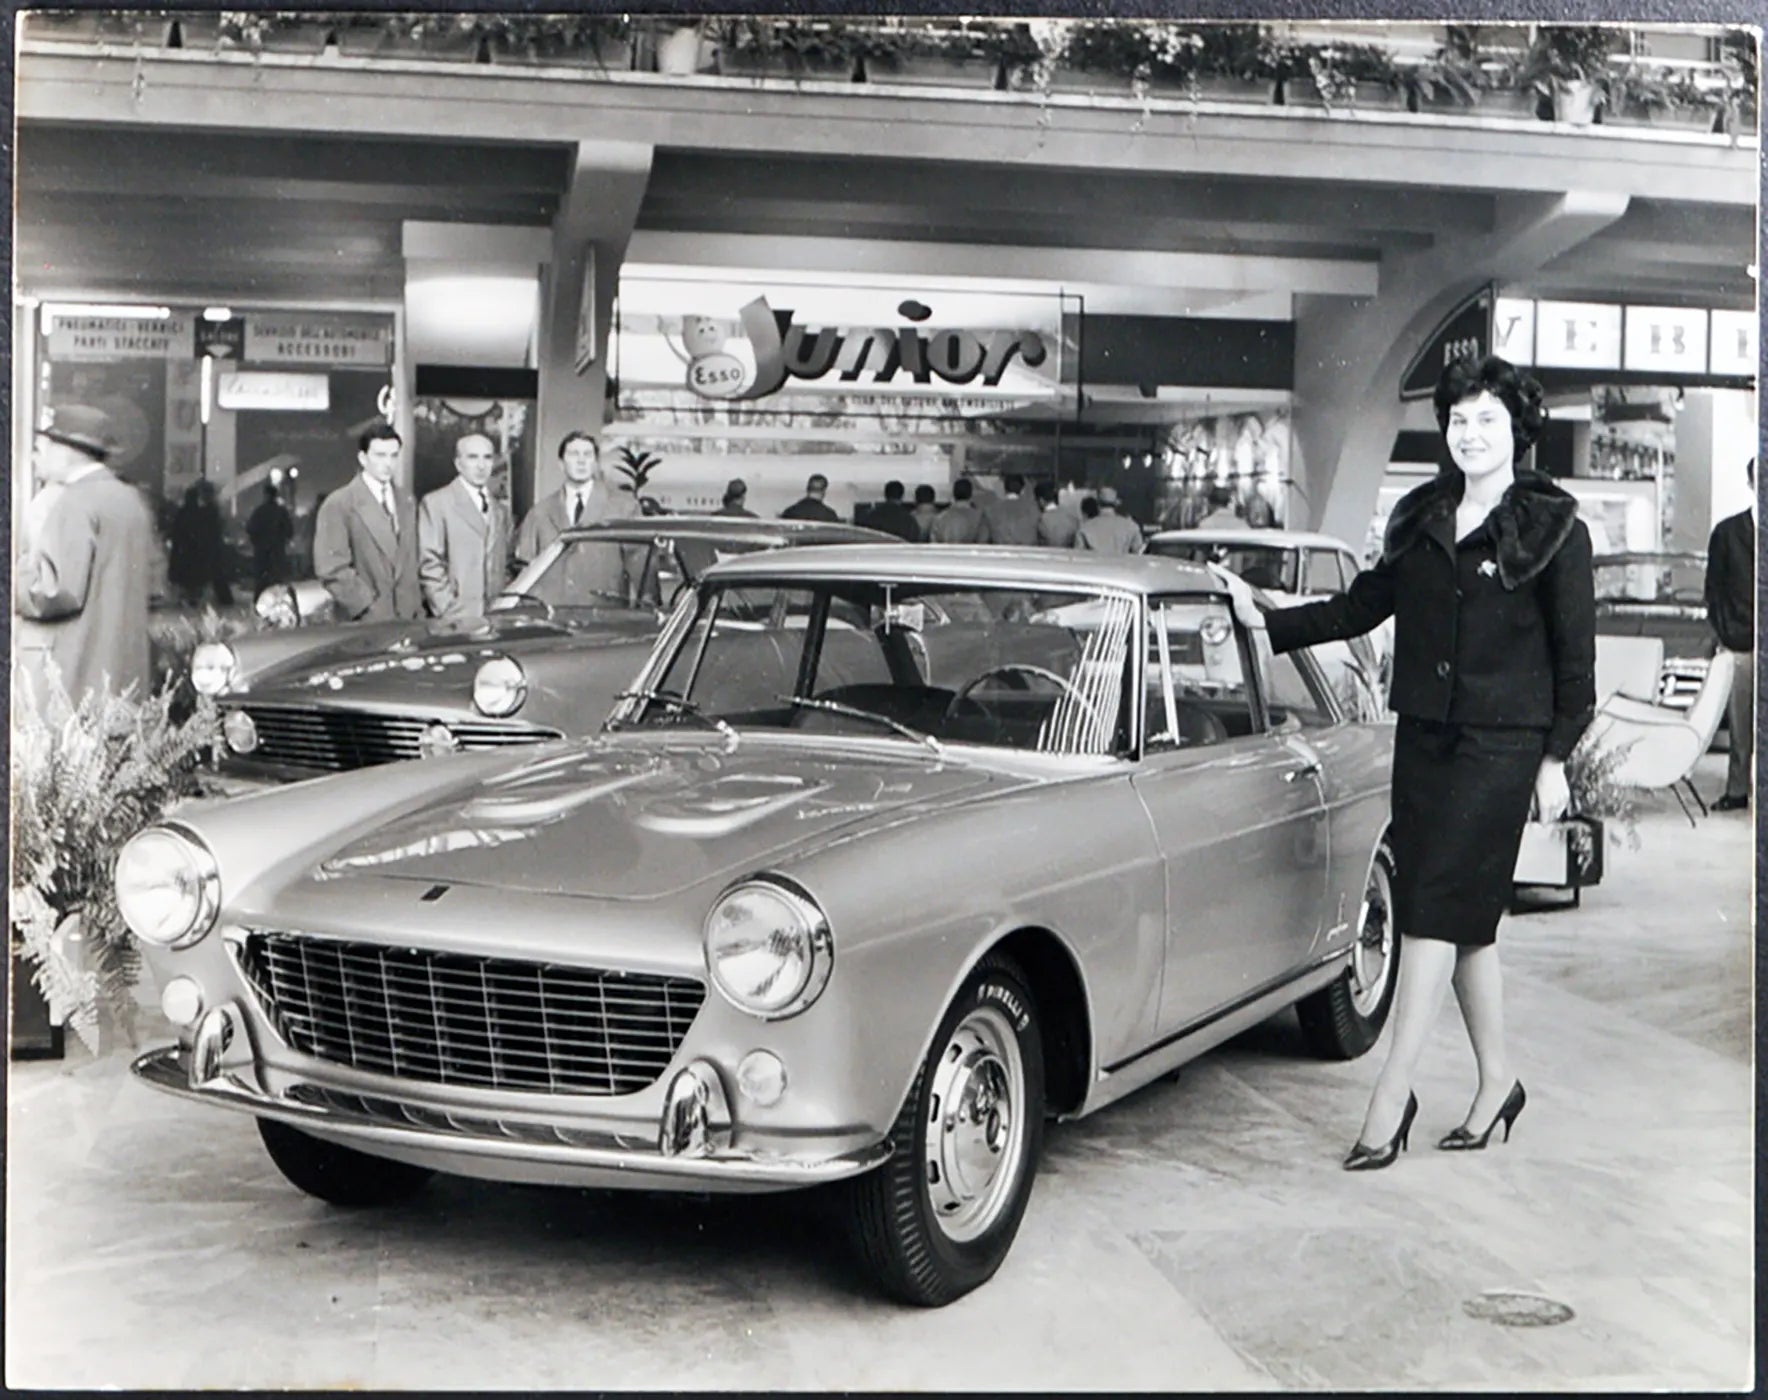 Fiat 1500 Salone Auto 1958 Ft 35328 - Stampa 21x27 cm - Farabola Stampa ai sali d'argento